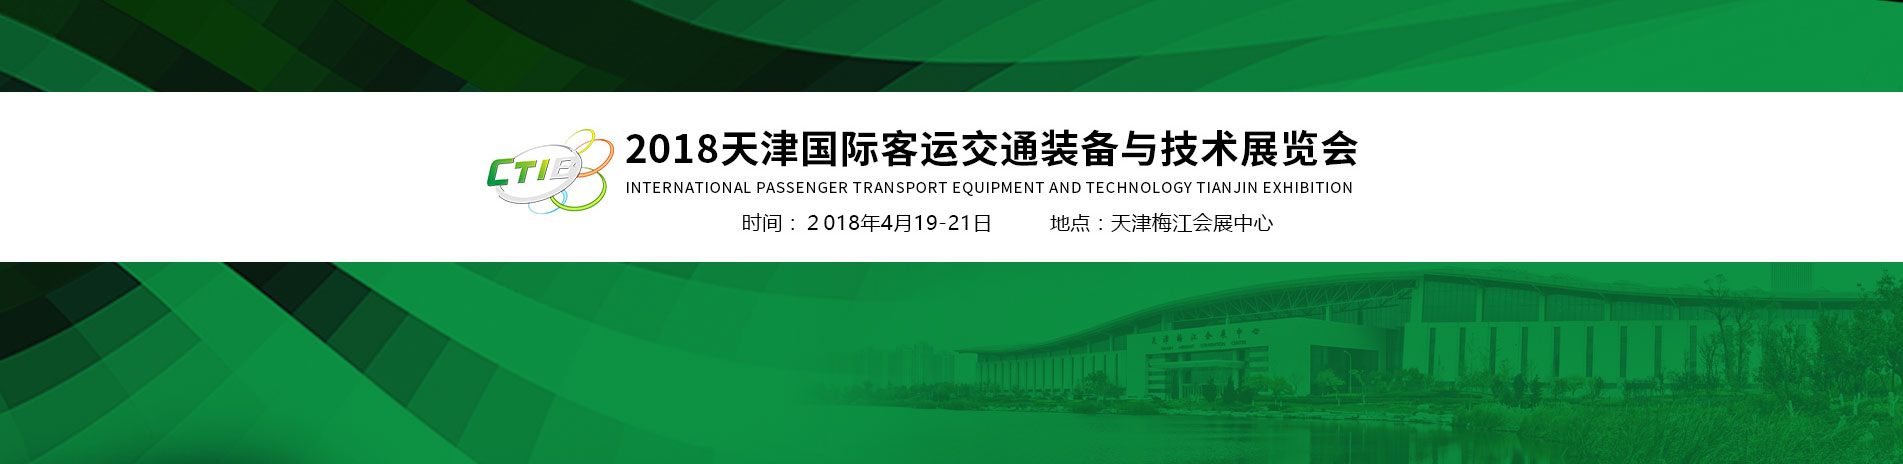 2018天津国际客运交通装备与技术展览会